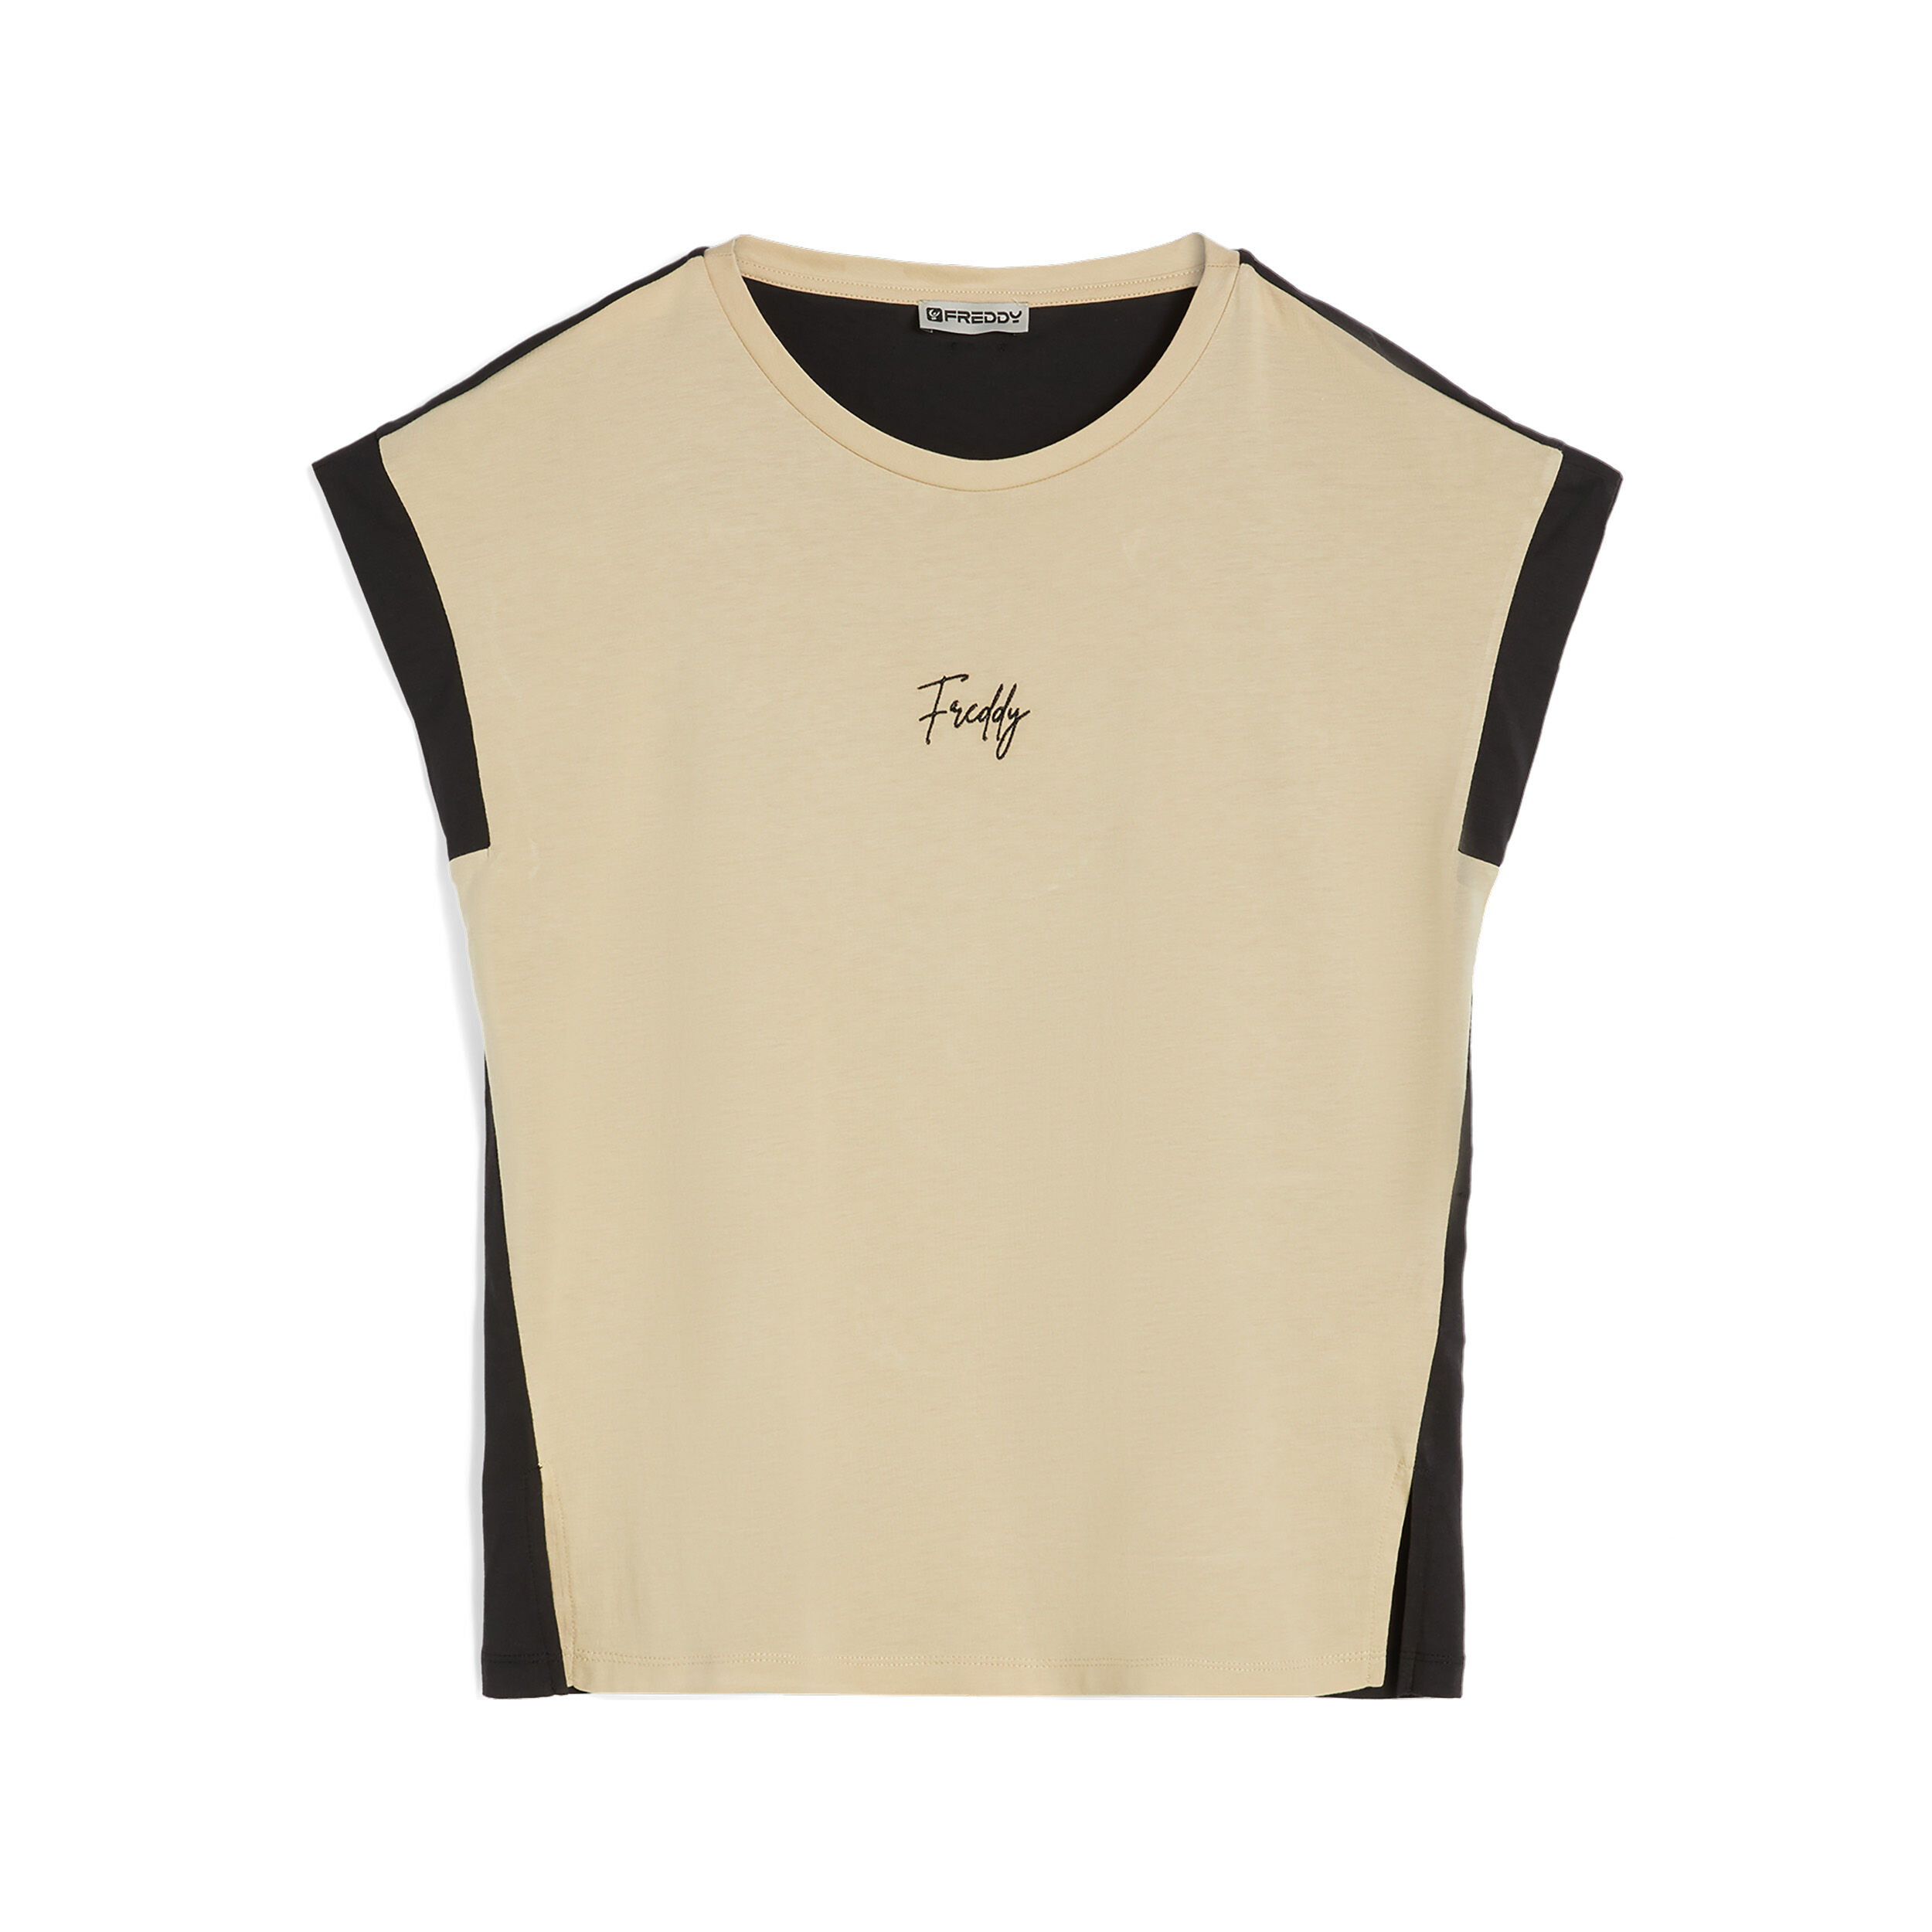 Freddy T-shirt da donna senza maniche in jersey modal bicolore Check Beige -Black Donna Small